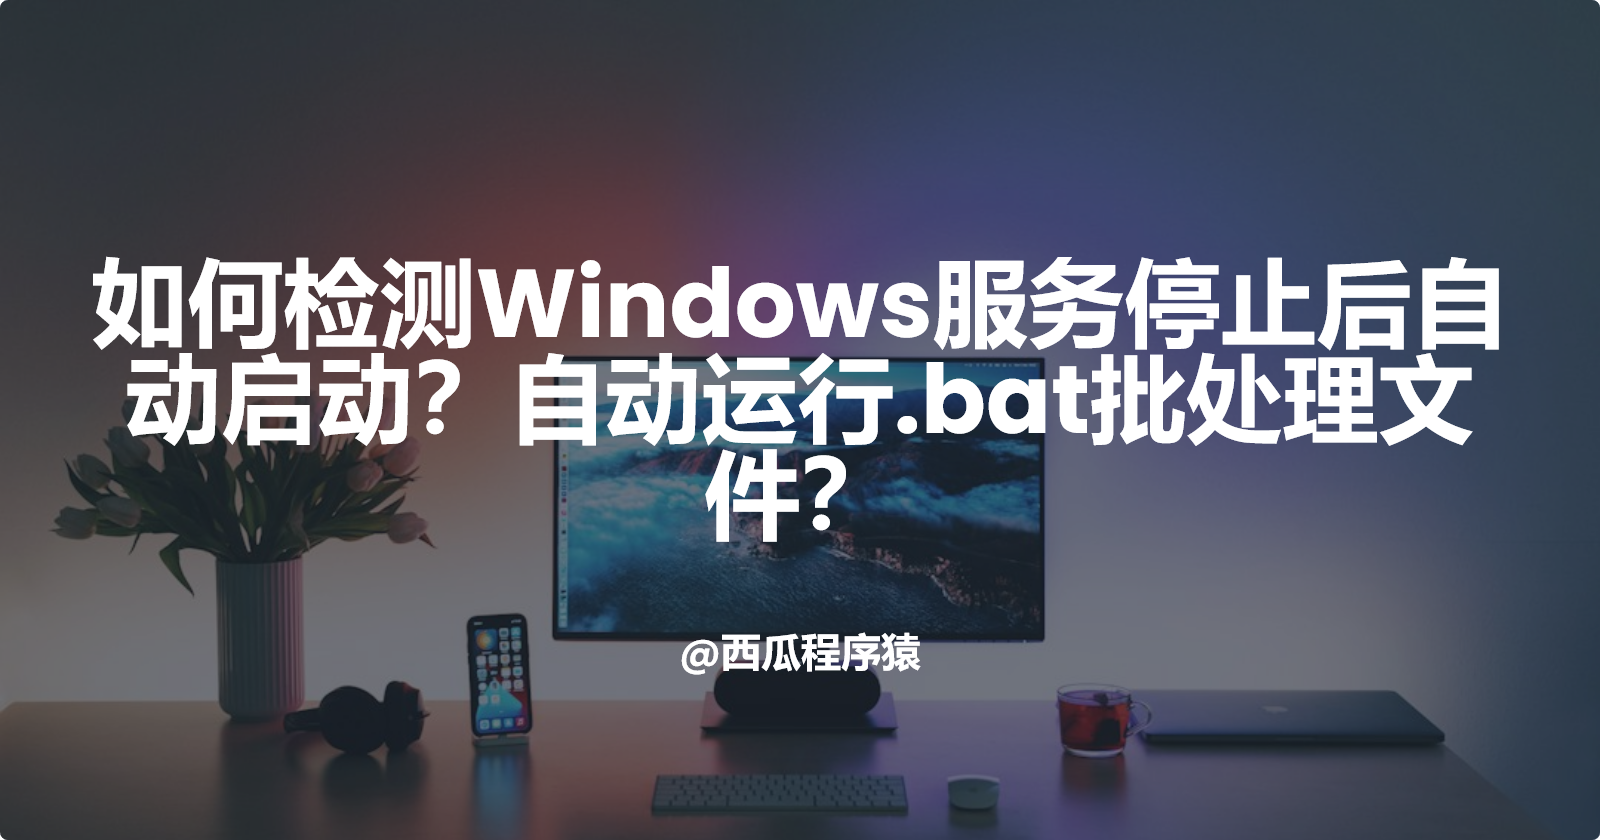 如何检测Windows服务停止后自动启动？自动运行.bat批处理文件？